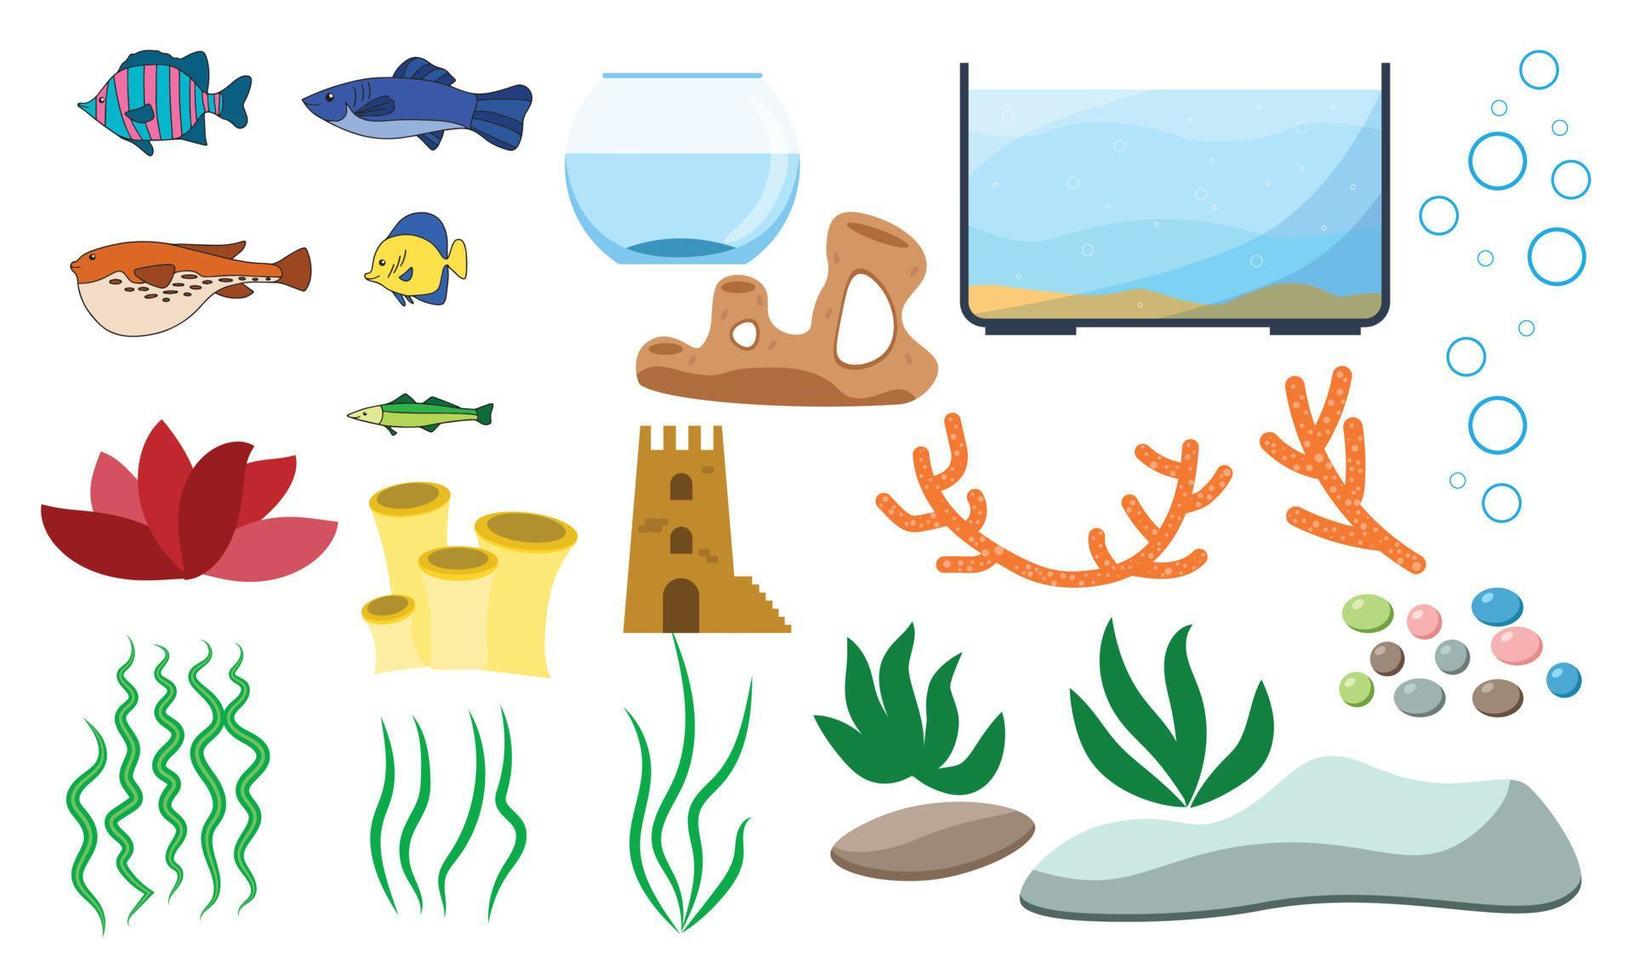 elementi vettoriali subacquei dell'acquario isolati su sfondo bianco. cartone animato per acquariofilia con pesci d'acquario pietre alghe conchiglie e vasche per acquari di diverse forme.